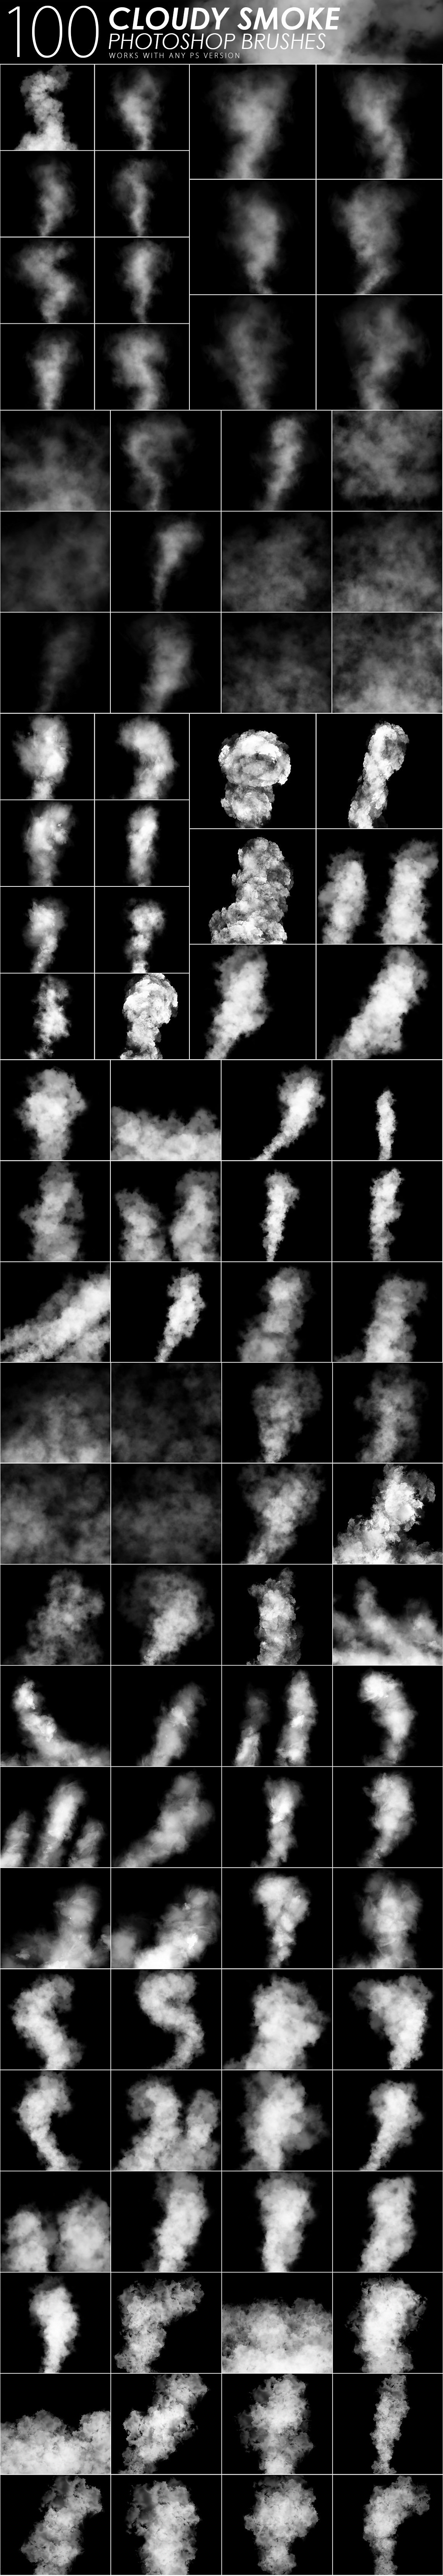 1505 cloudy smoke photoshop brushes 755